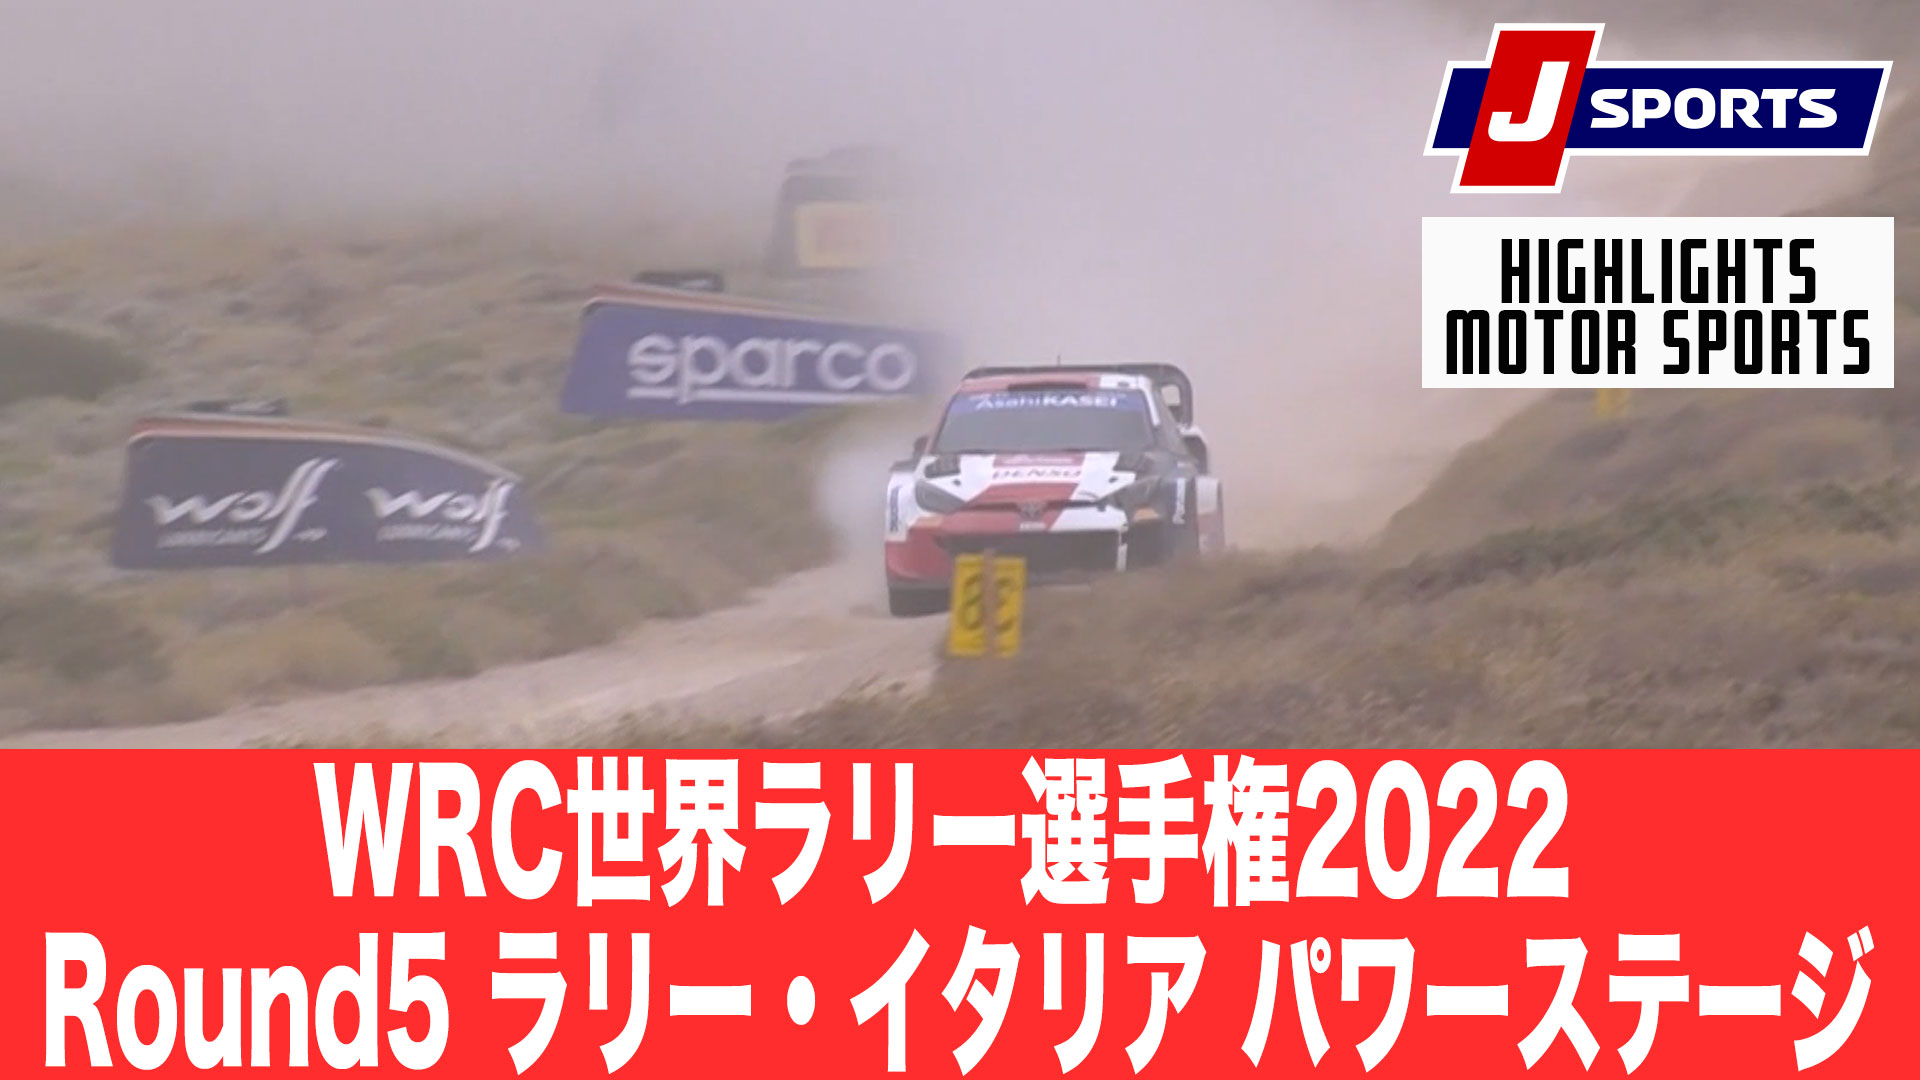 【ハイライト】WRC世界ラリー選手権2022 Round5 ラリー・イタリア パワーステージ